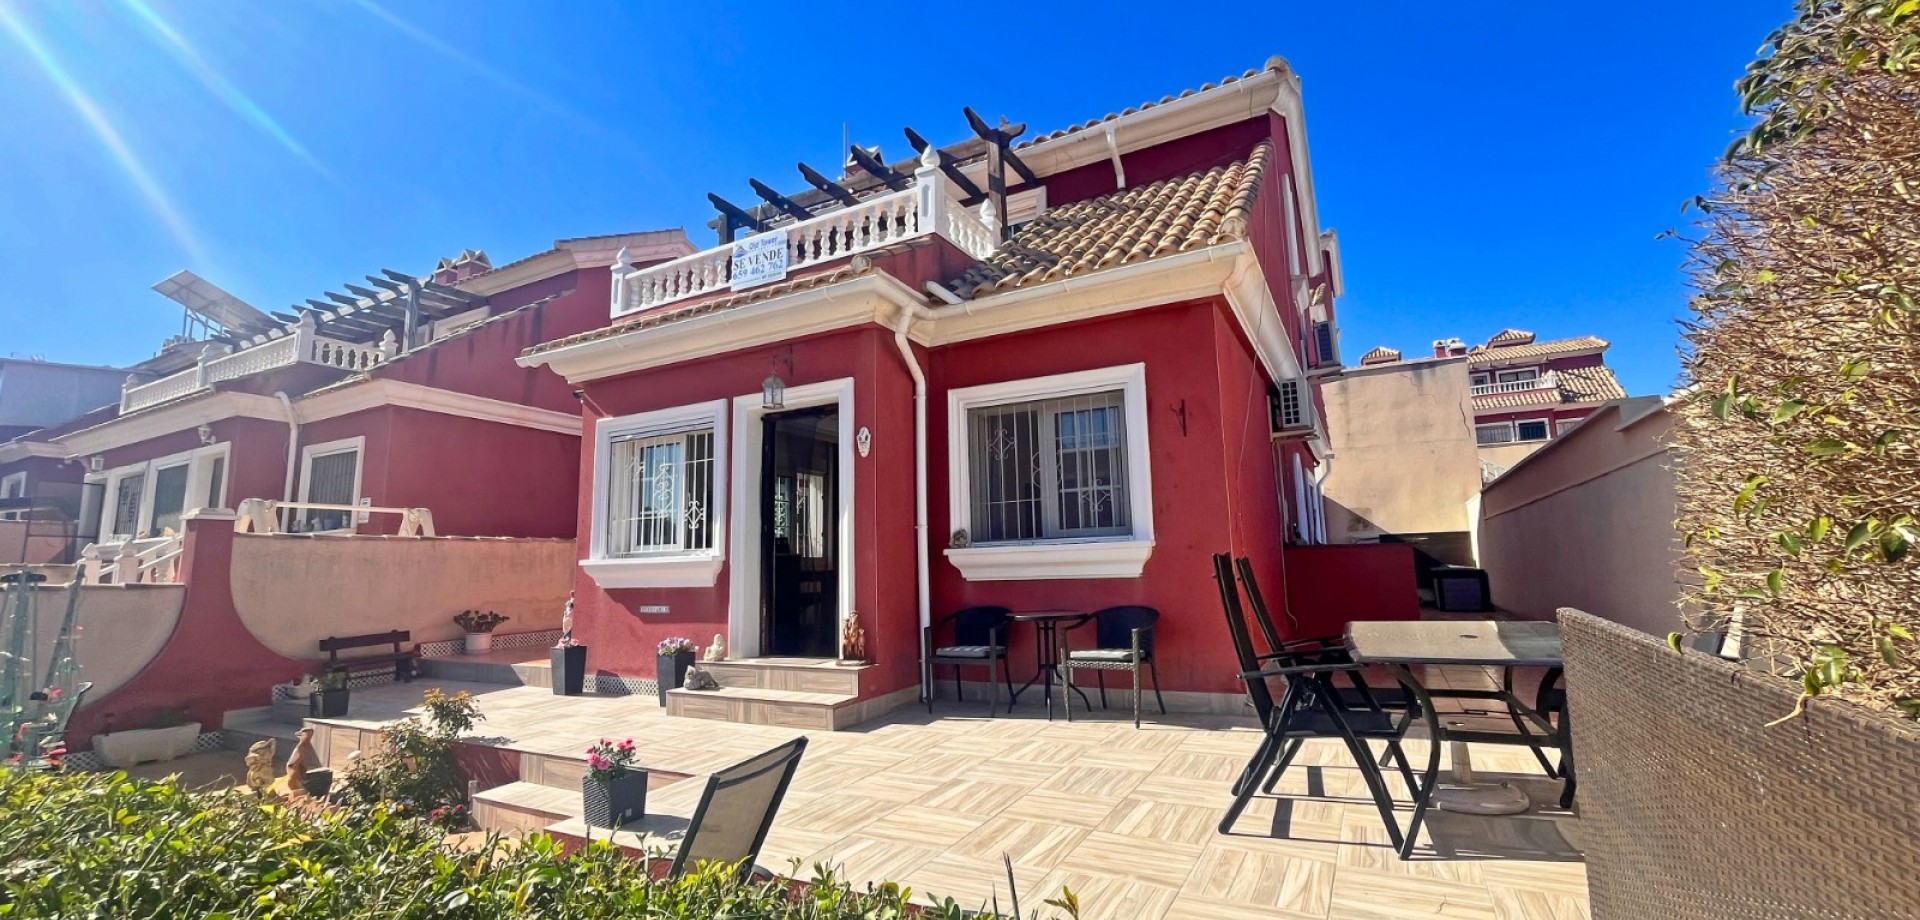 For sale: 2 bedroom house / villa in Orihuela Costa, Costa Blanca